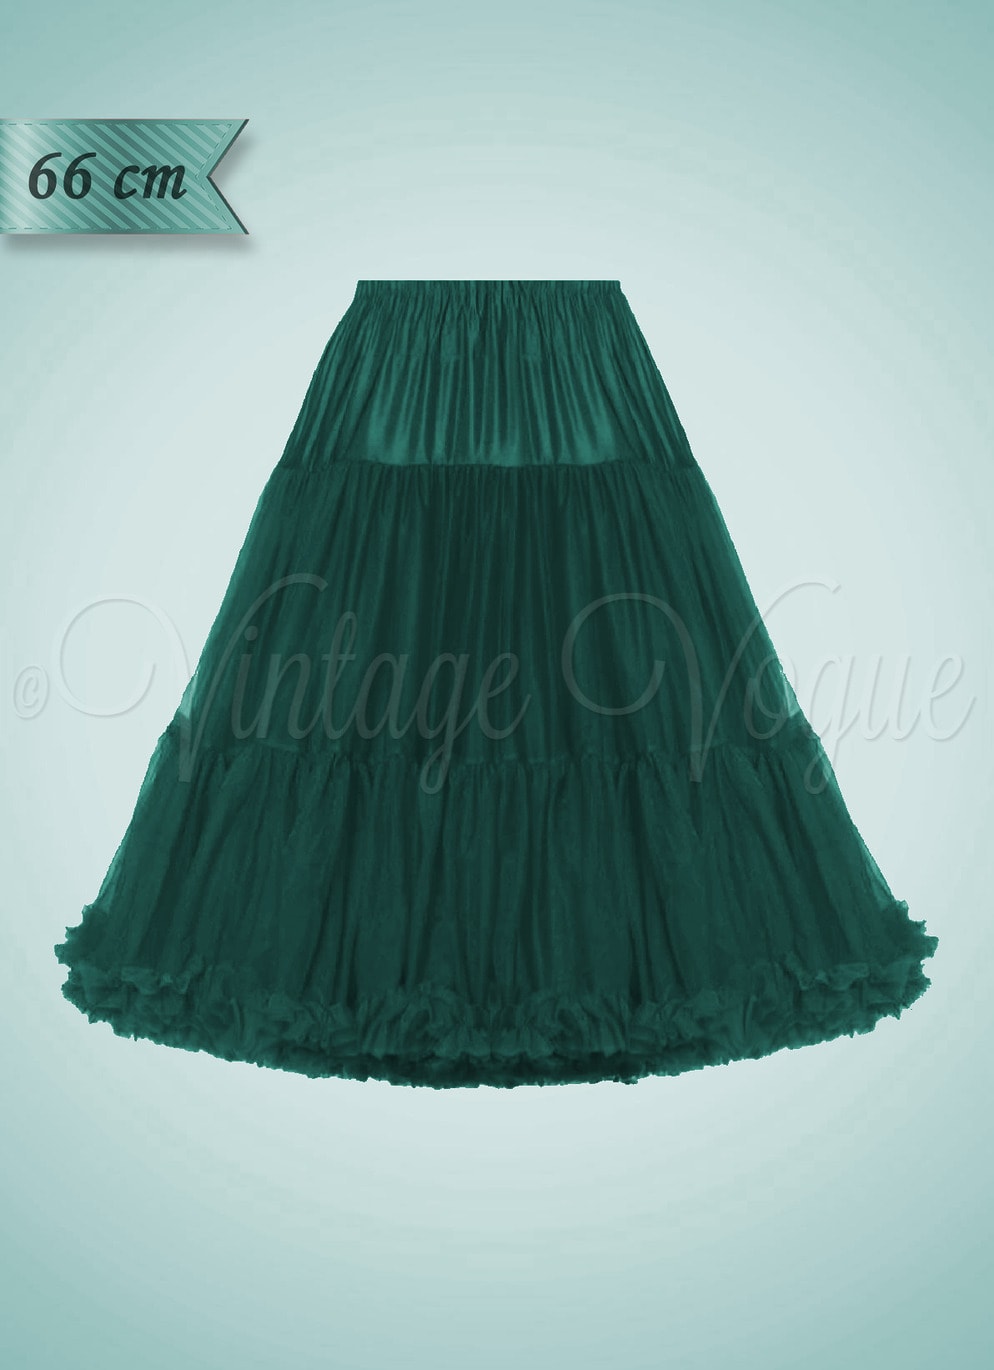 Banned 50er Jahre Rockabilly Retro Vintage Unterrock Lifeforms Petticoat 66 cm in Dunkelgrün Dark Green Bottle Green